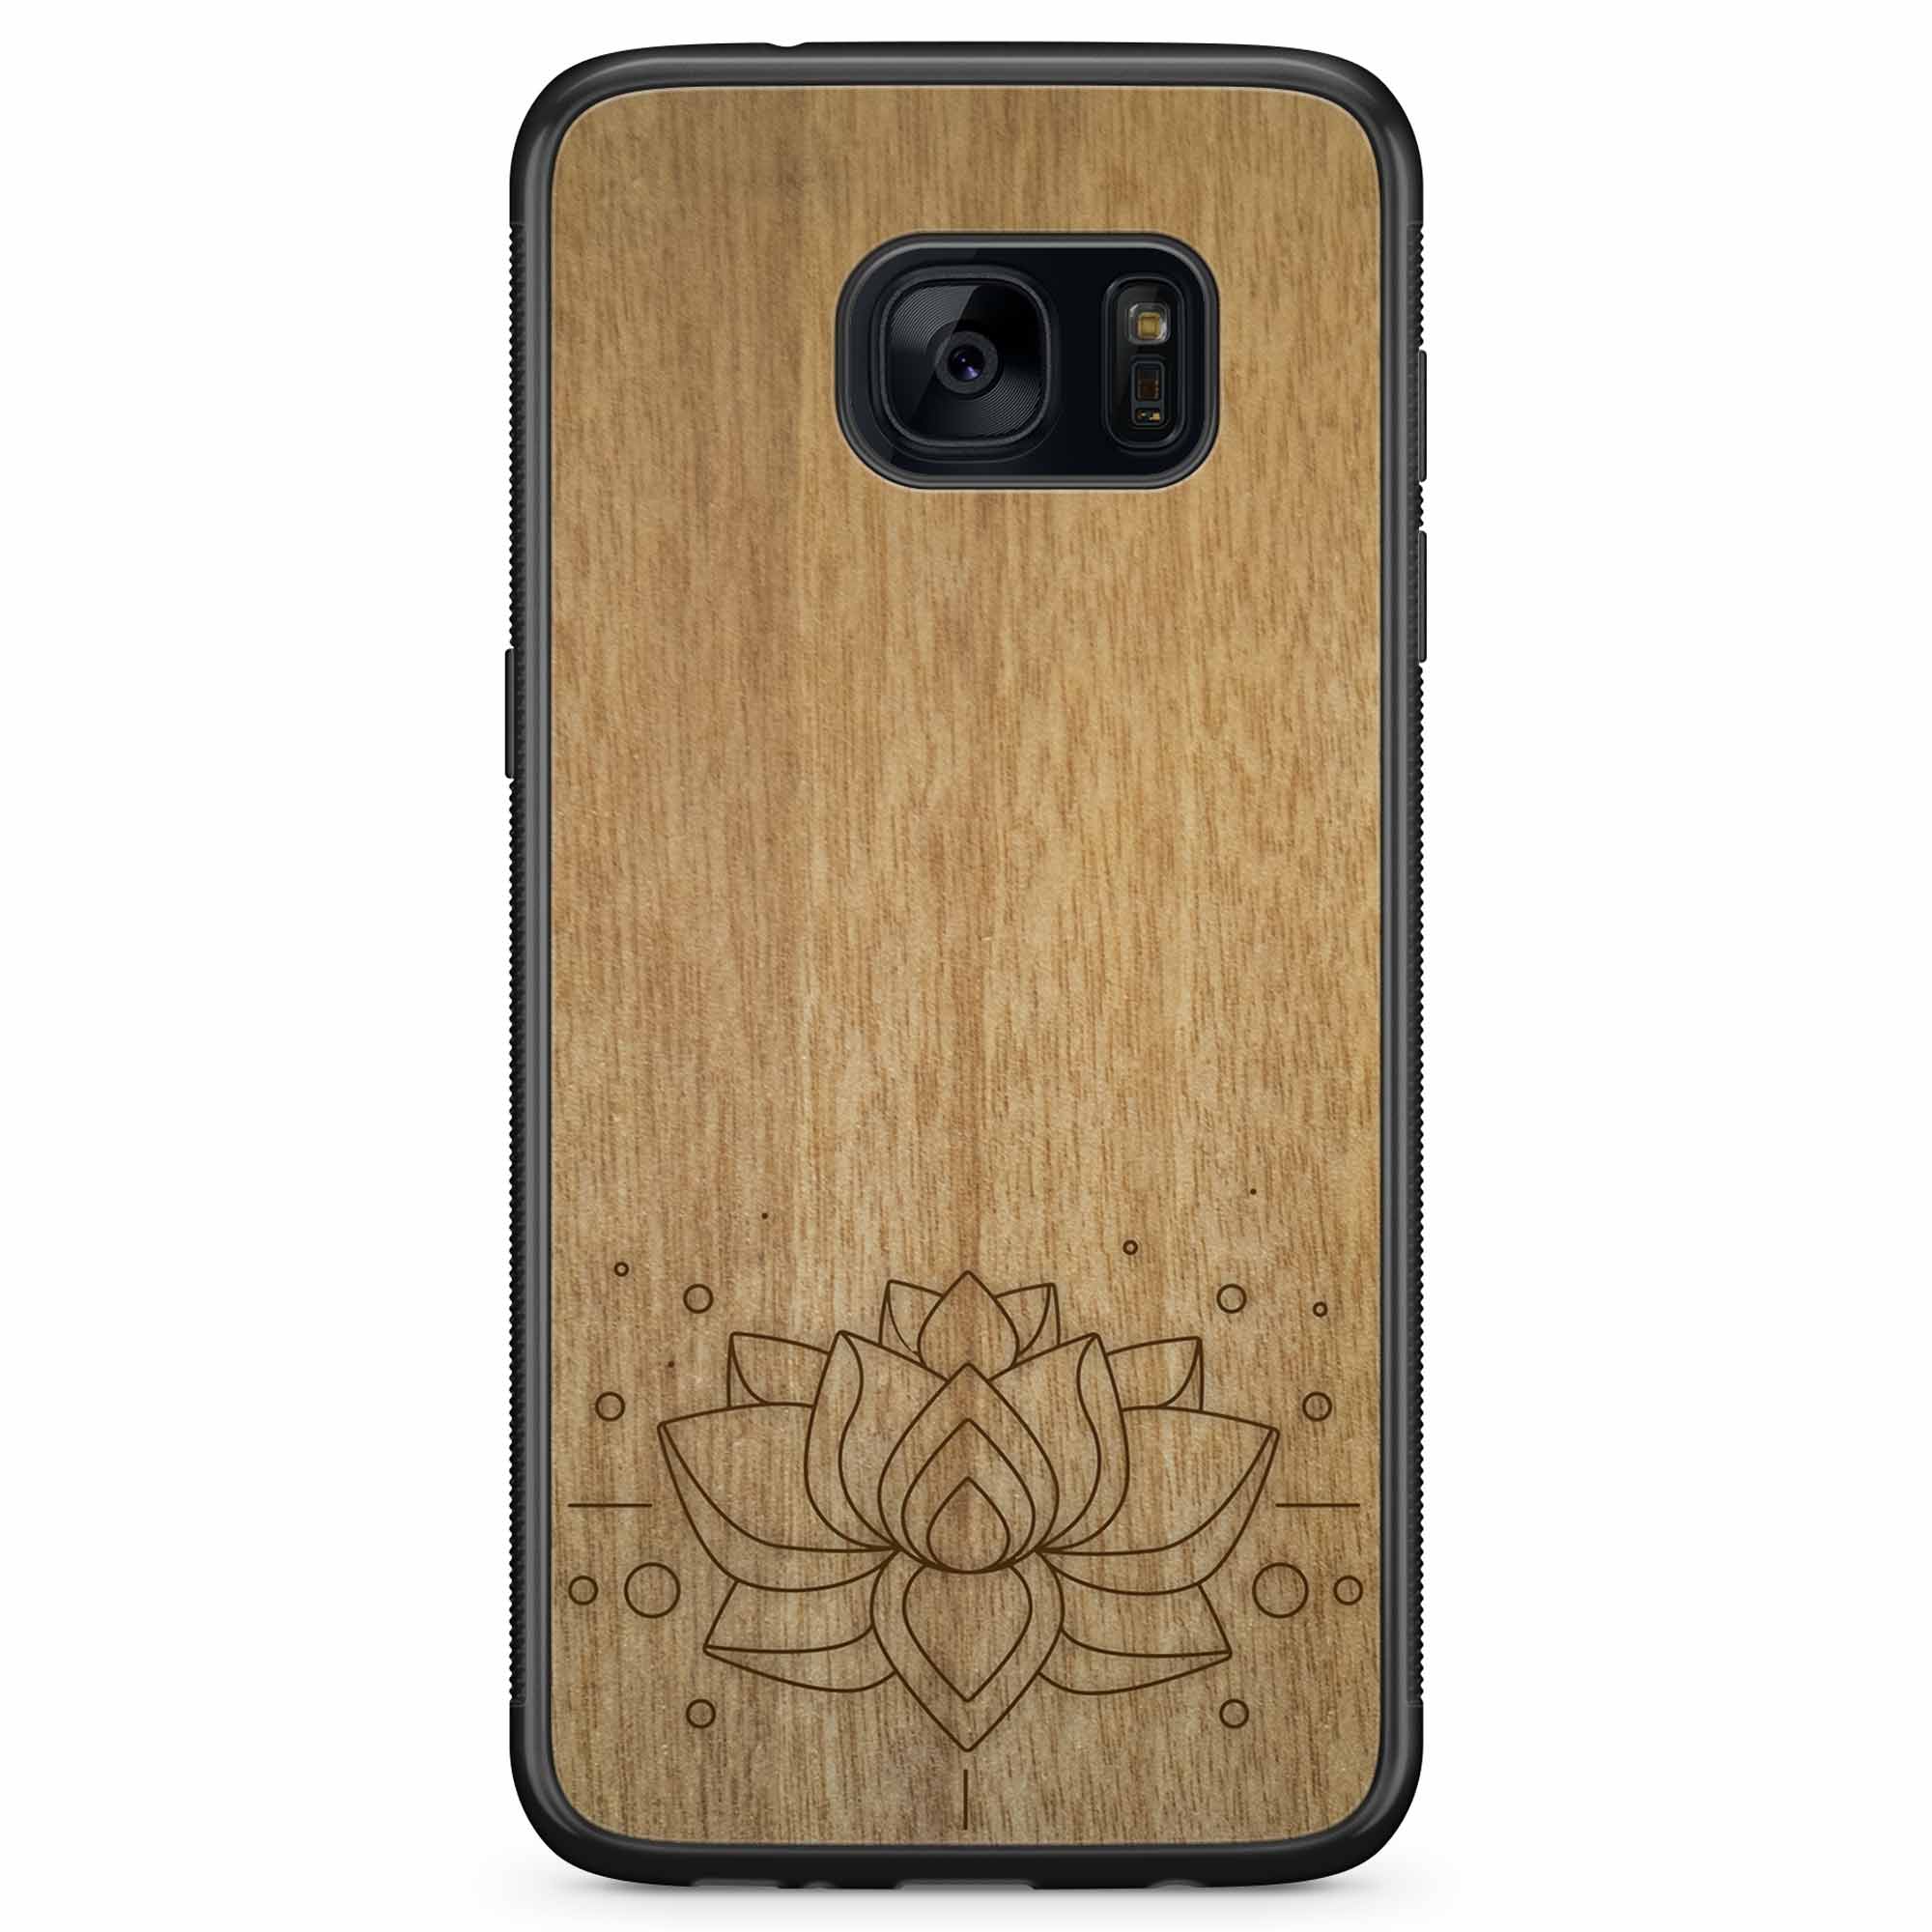 Carcasa de madera para teléfono con grabado Lotus Samsung S7